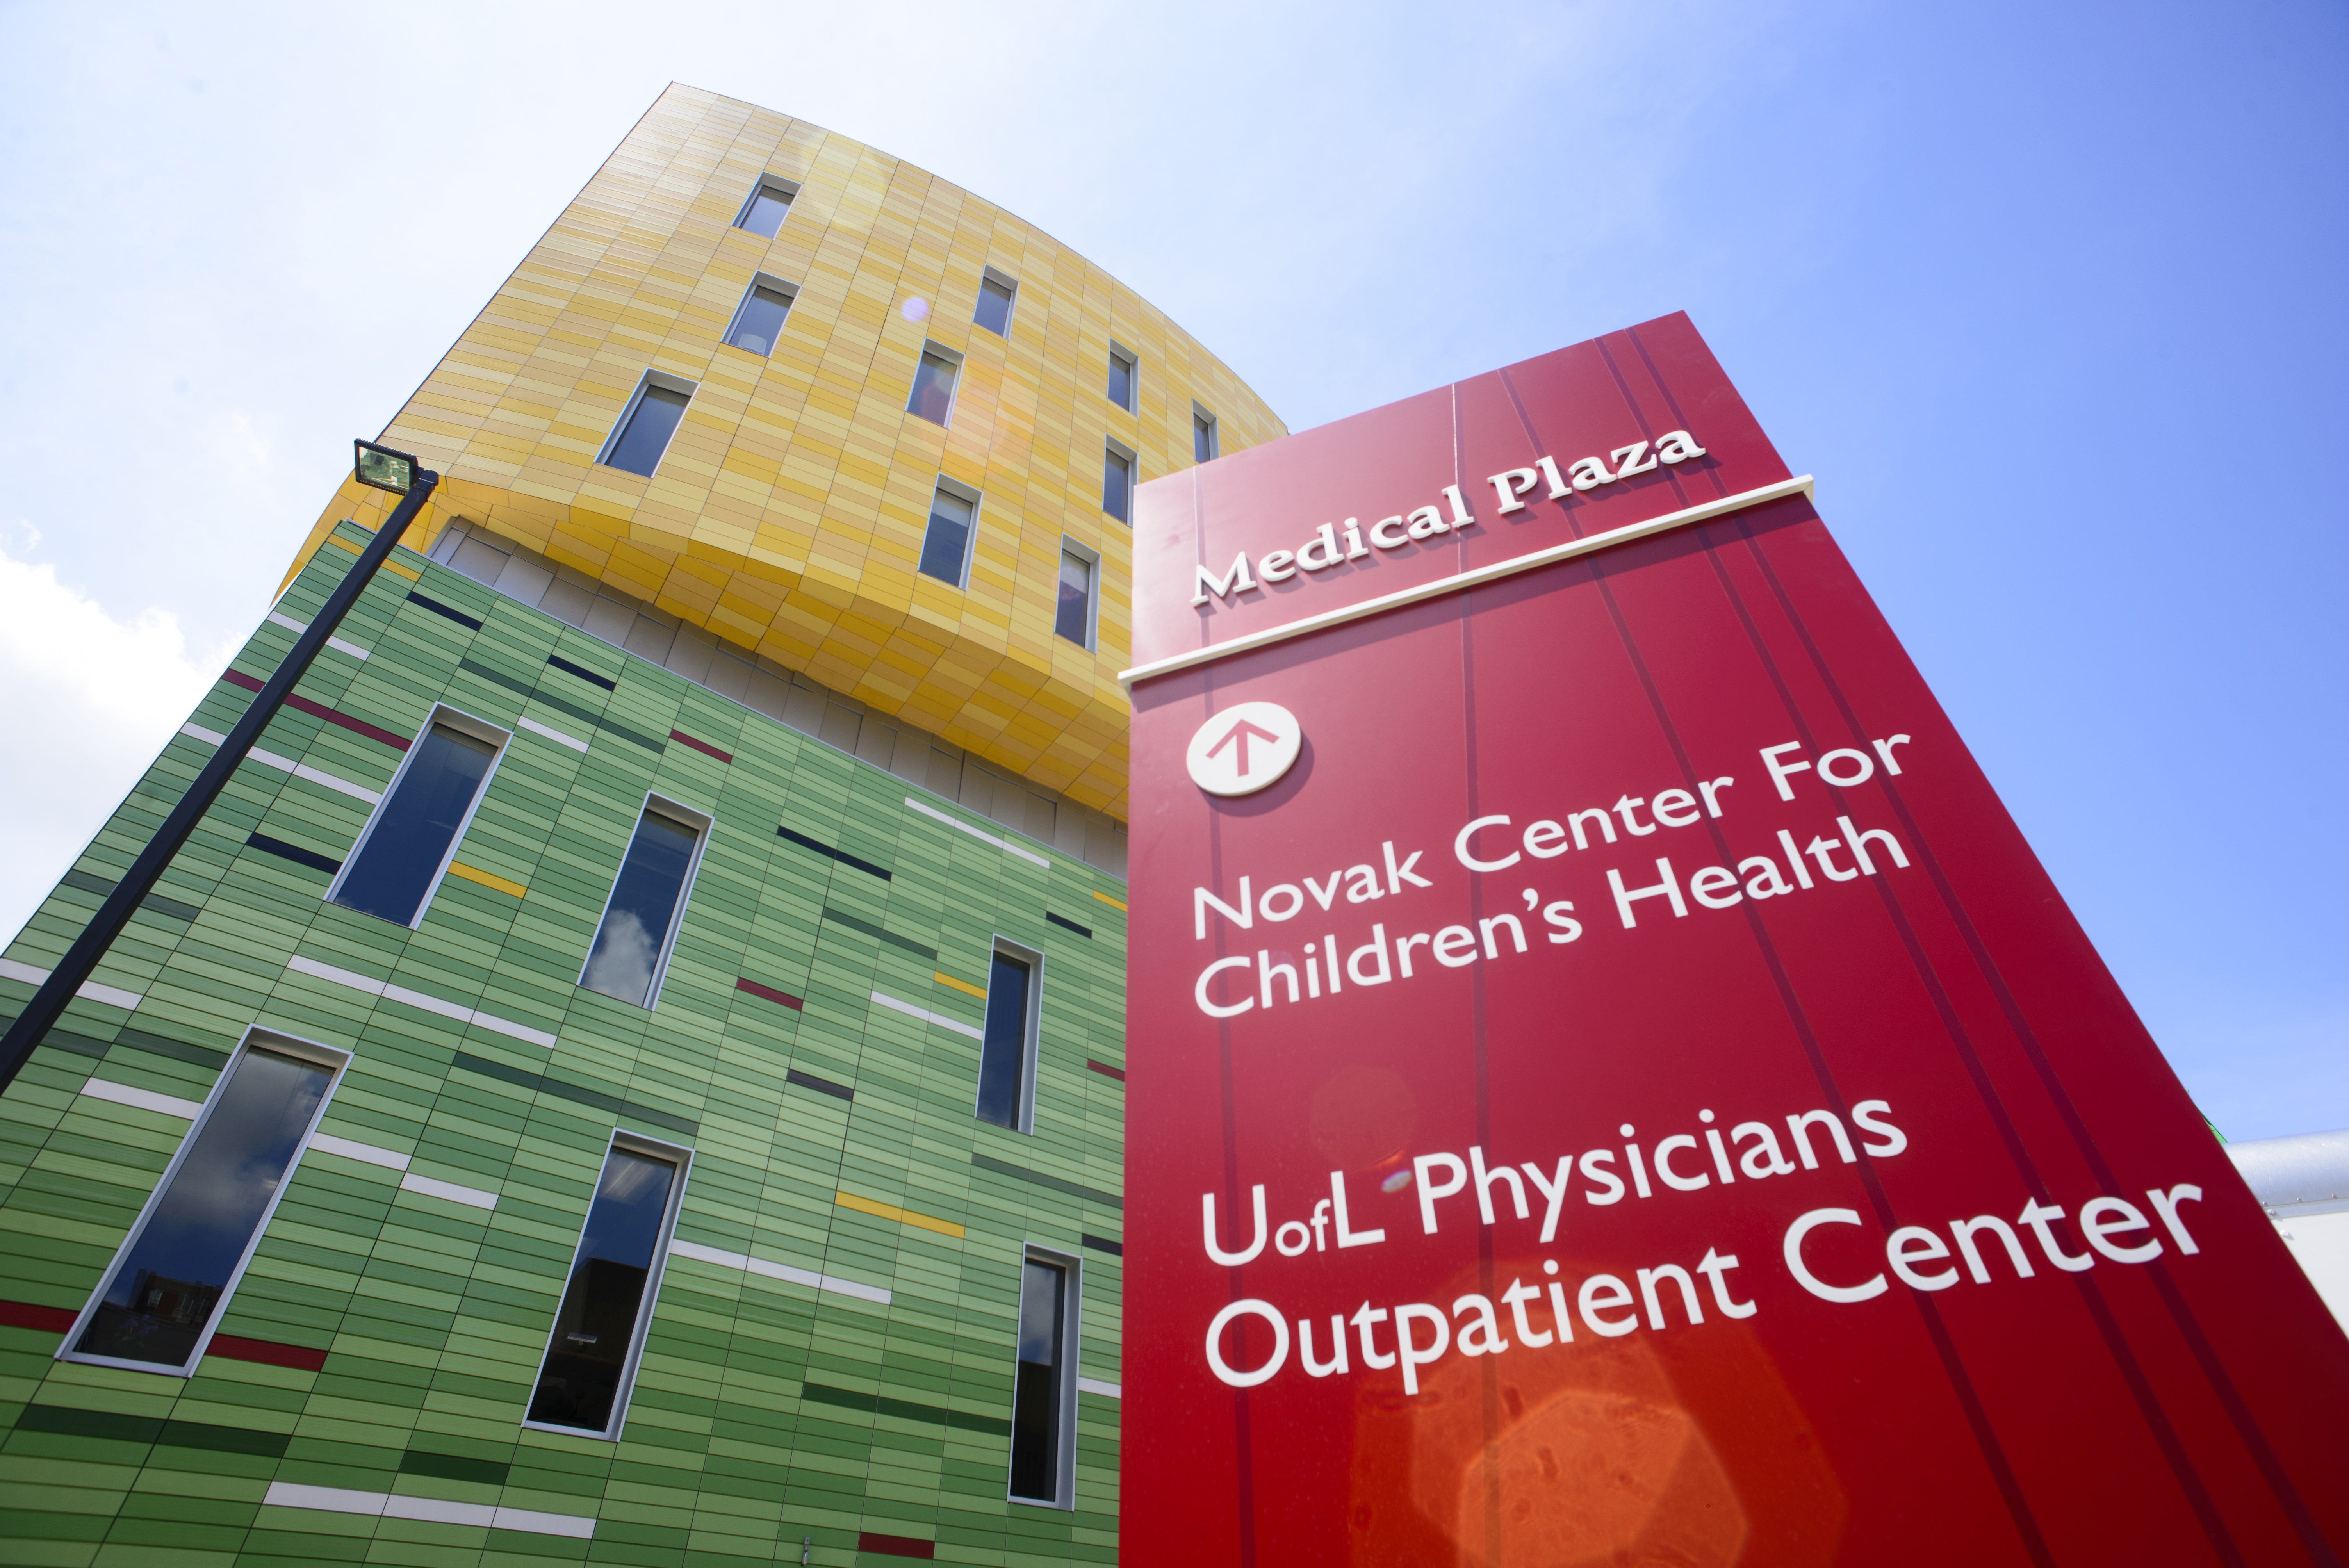 The Novak Center for Children's Health